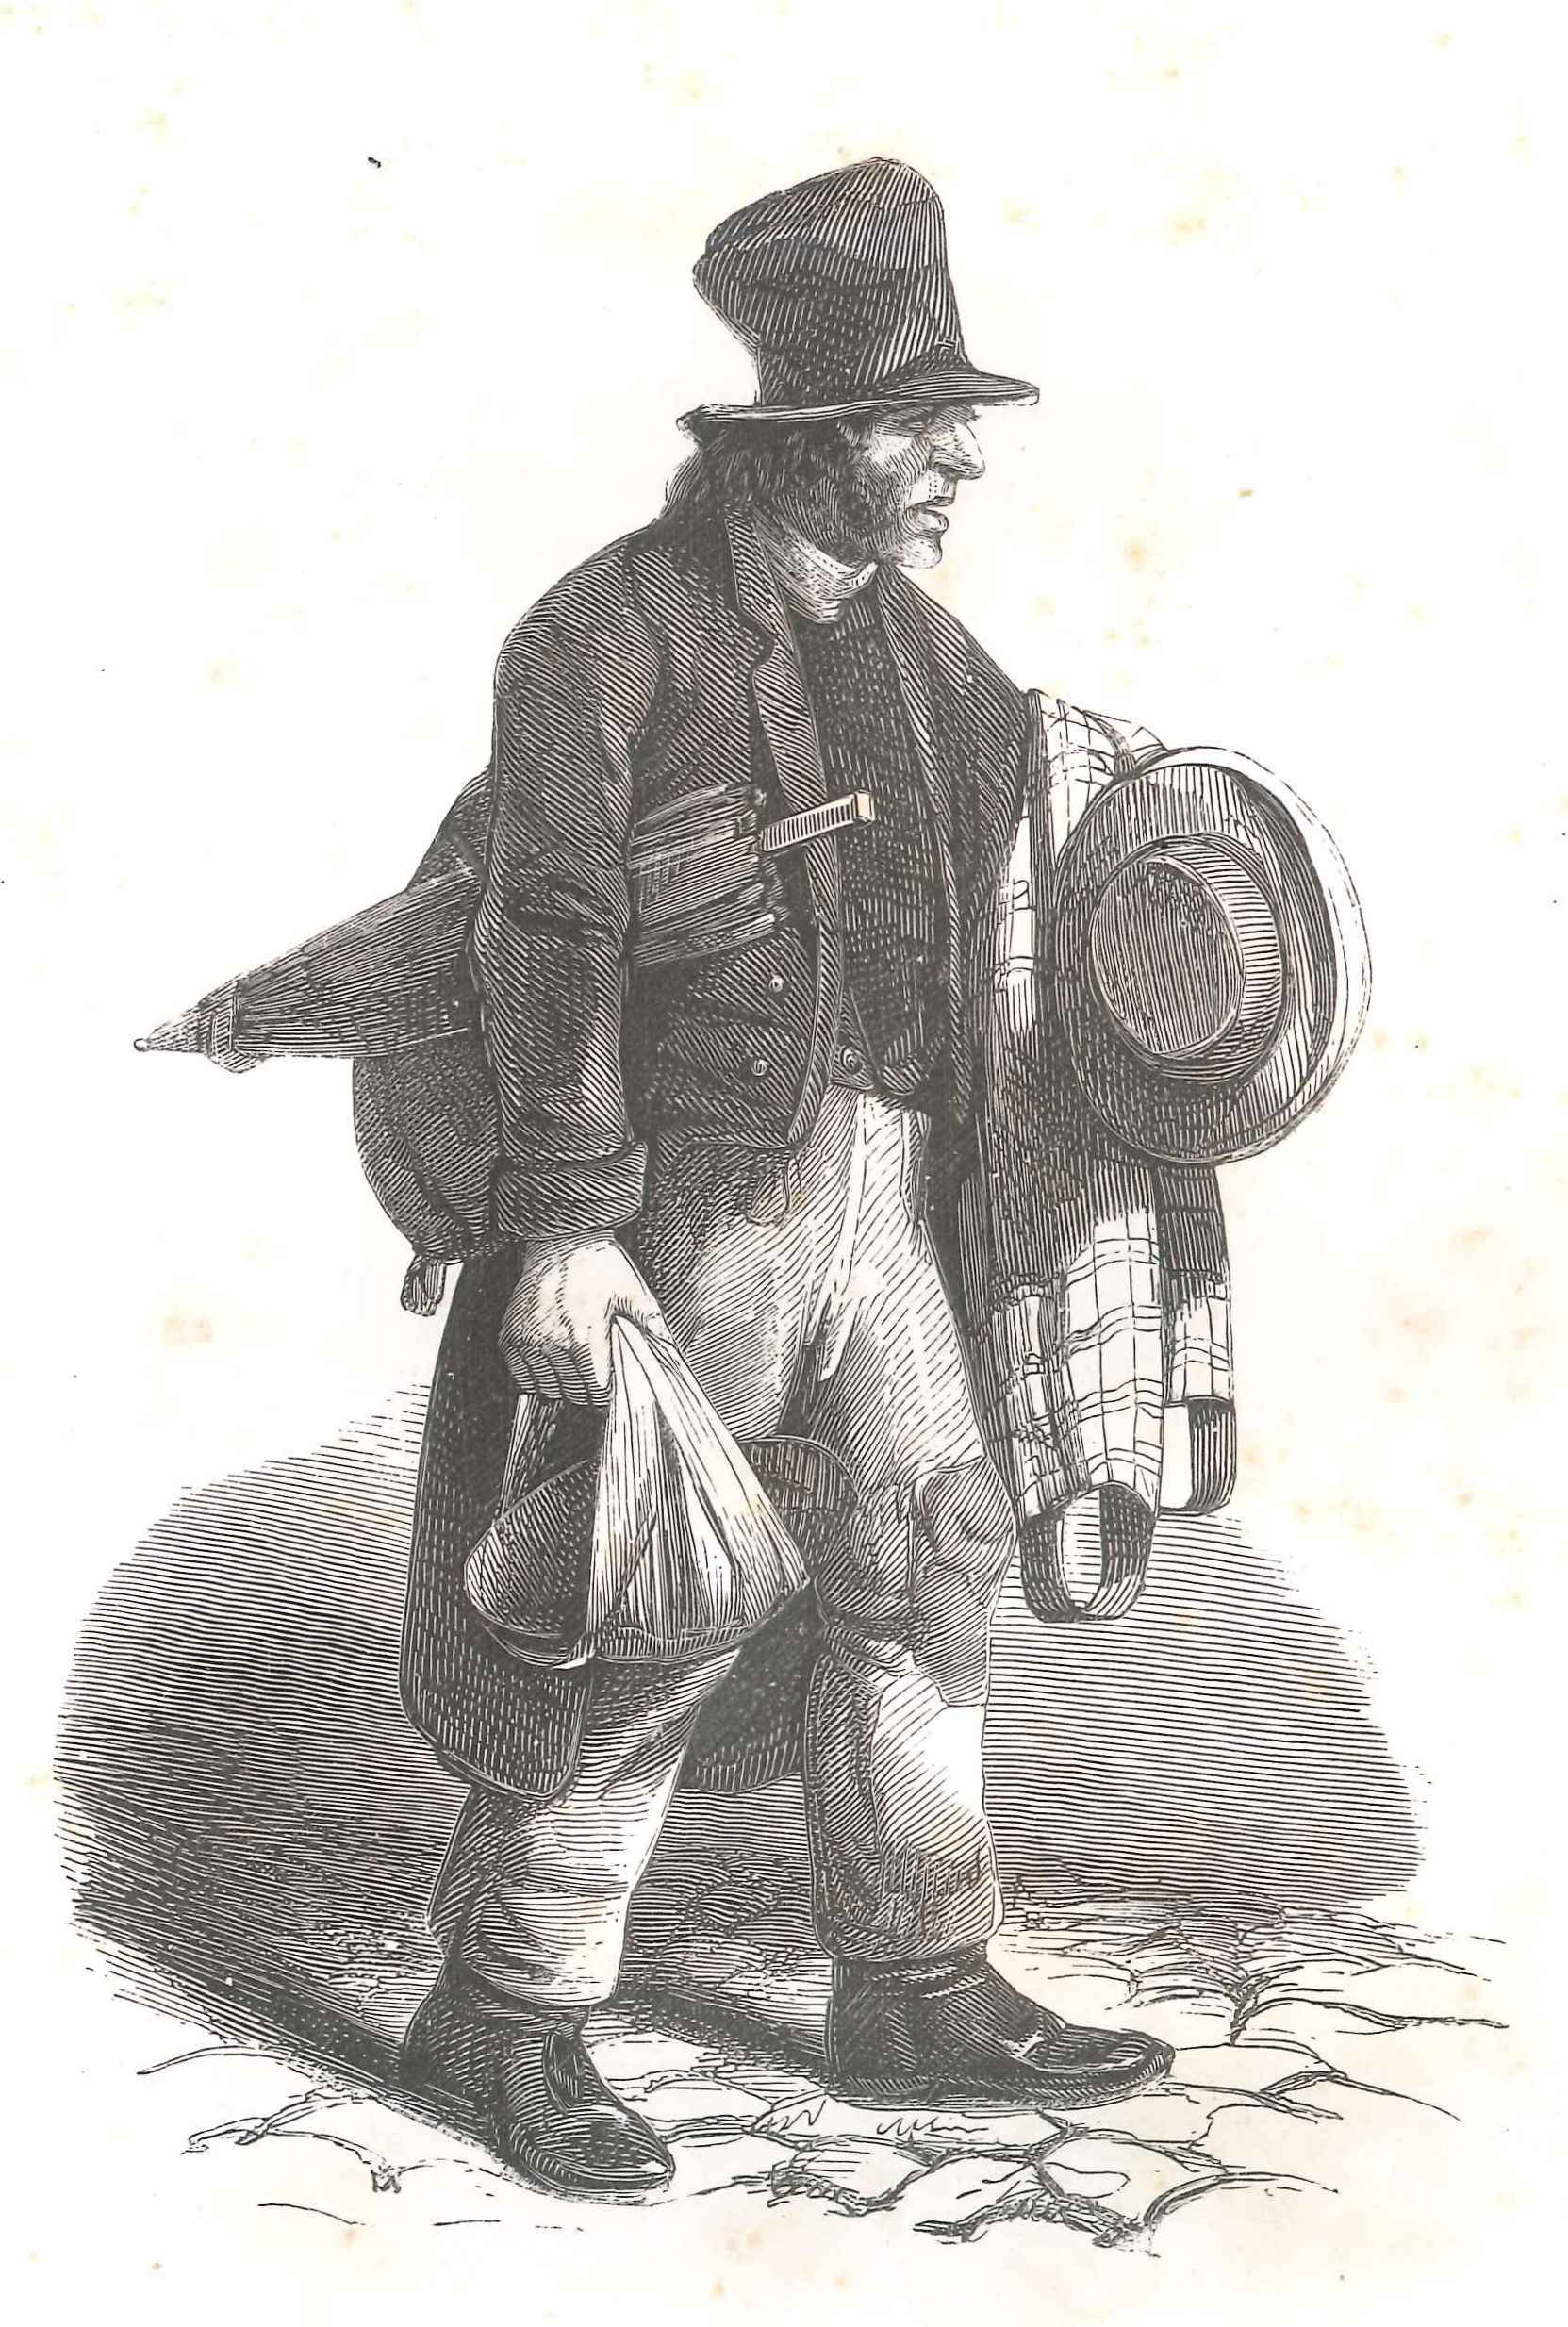 De oudekleren verkoper, 'Karakterschets', 1841.